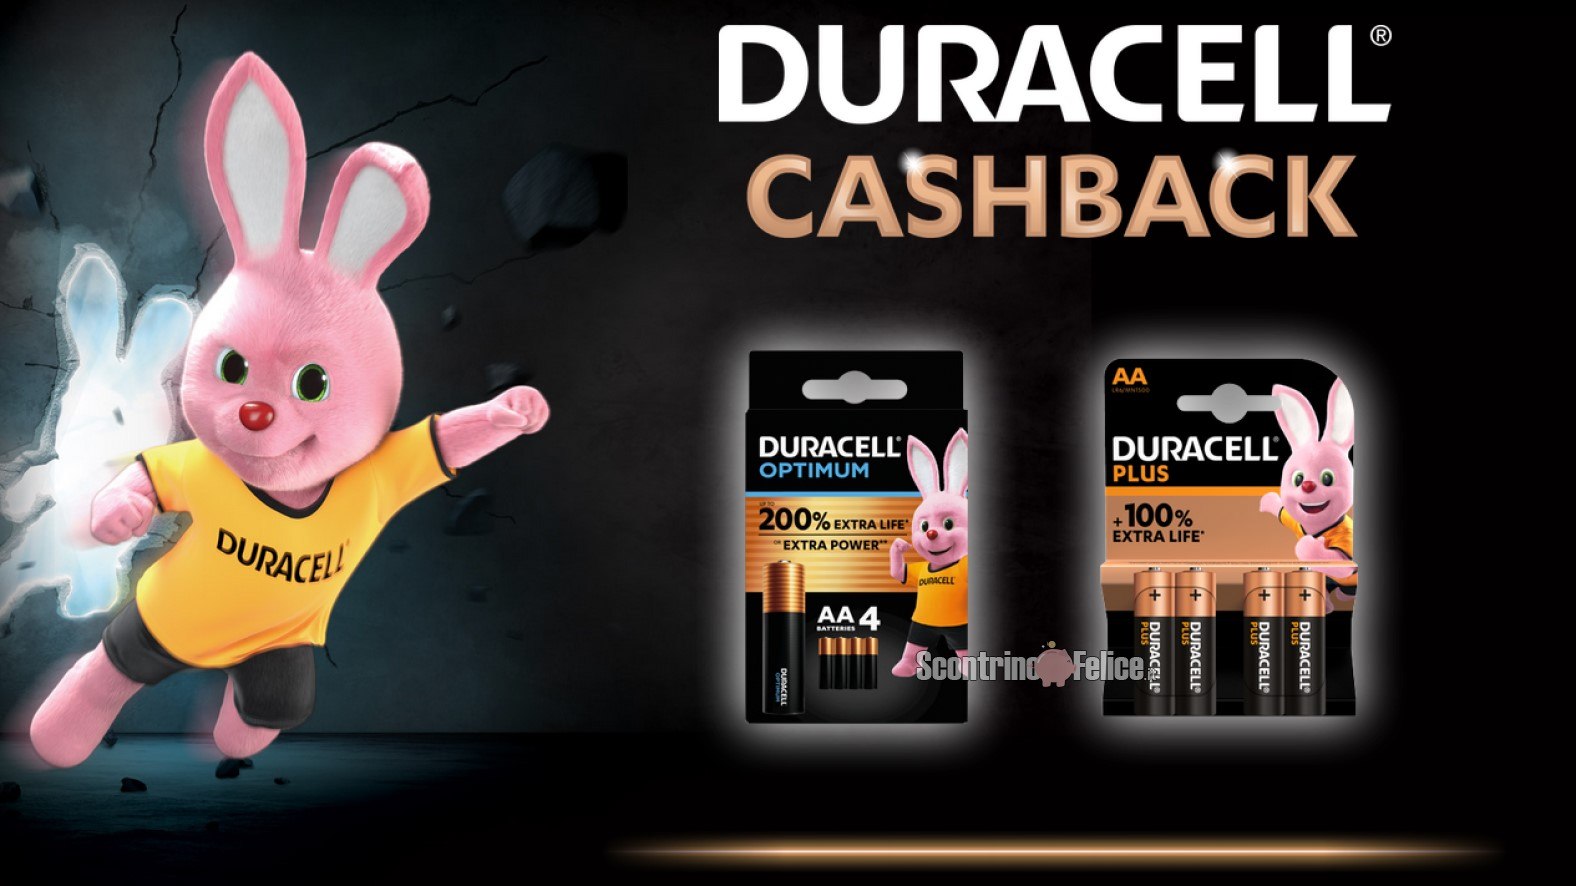 Cashback Duracell: ricevi fino a 6 euro di rimborso in buoni spesa